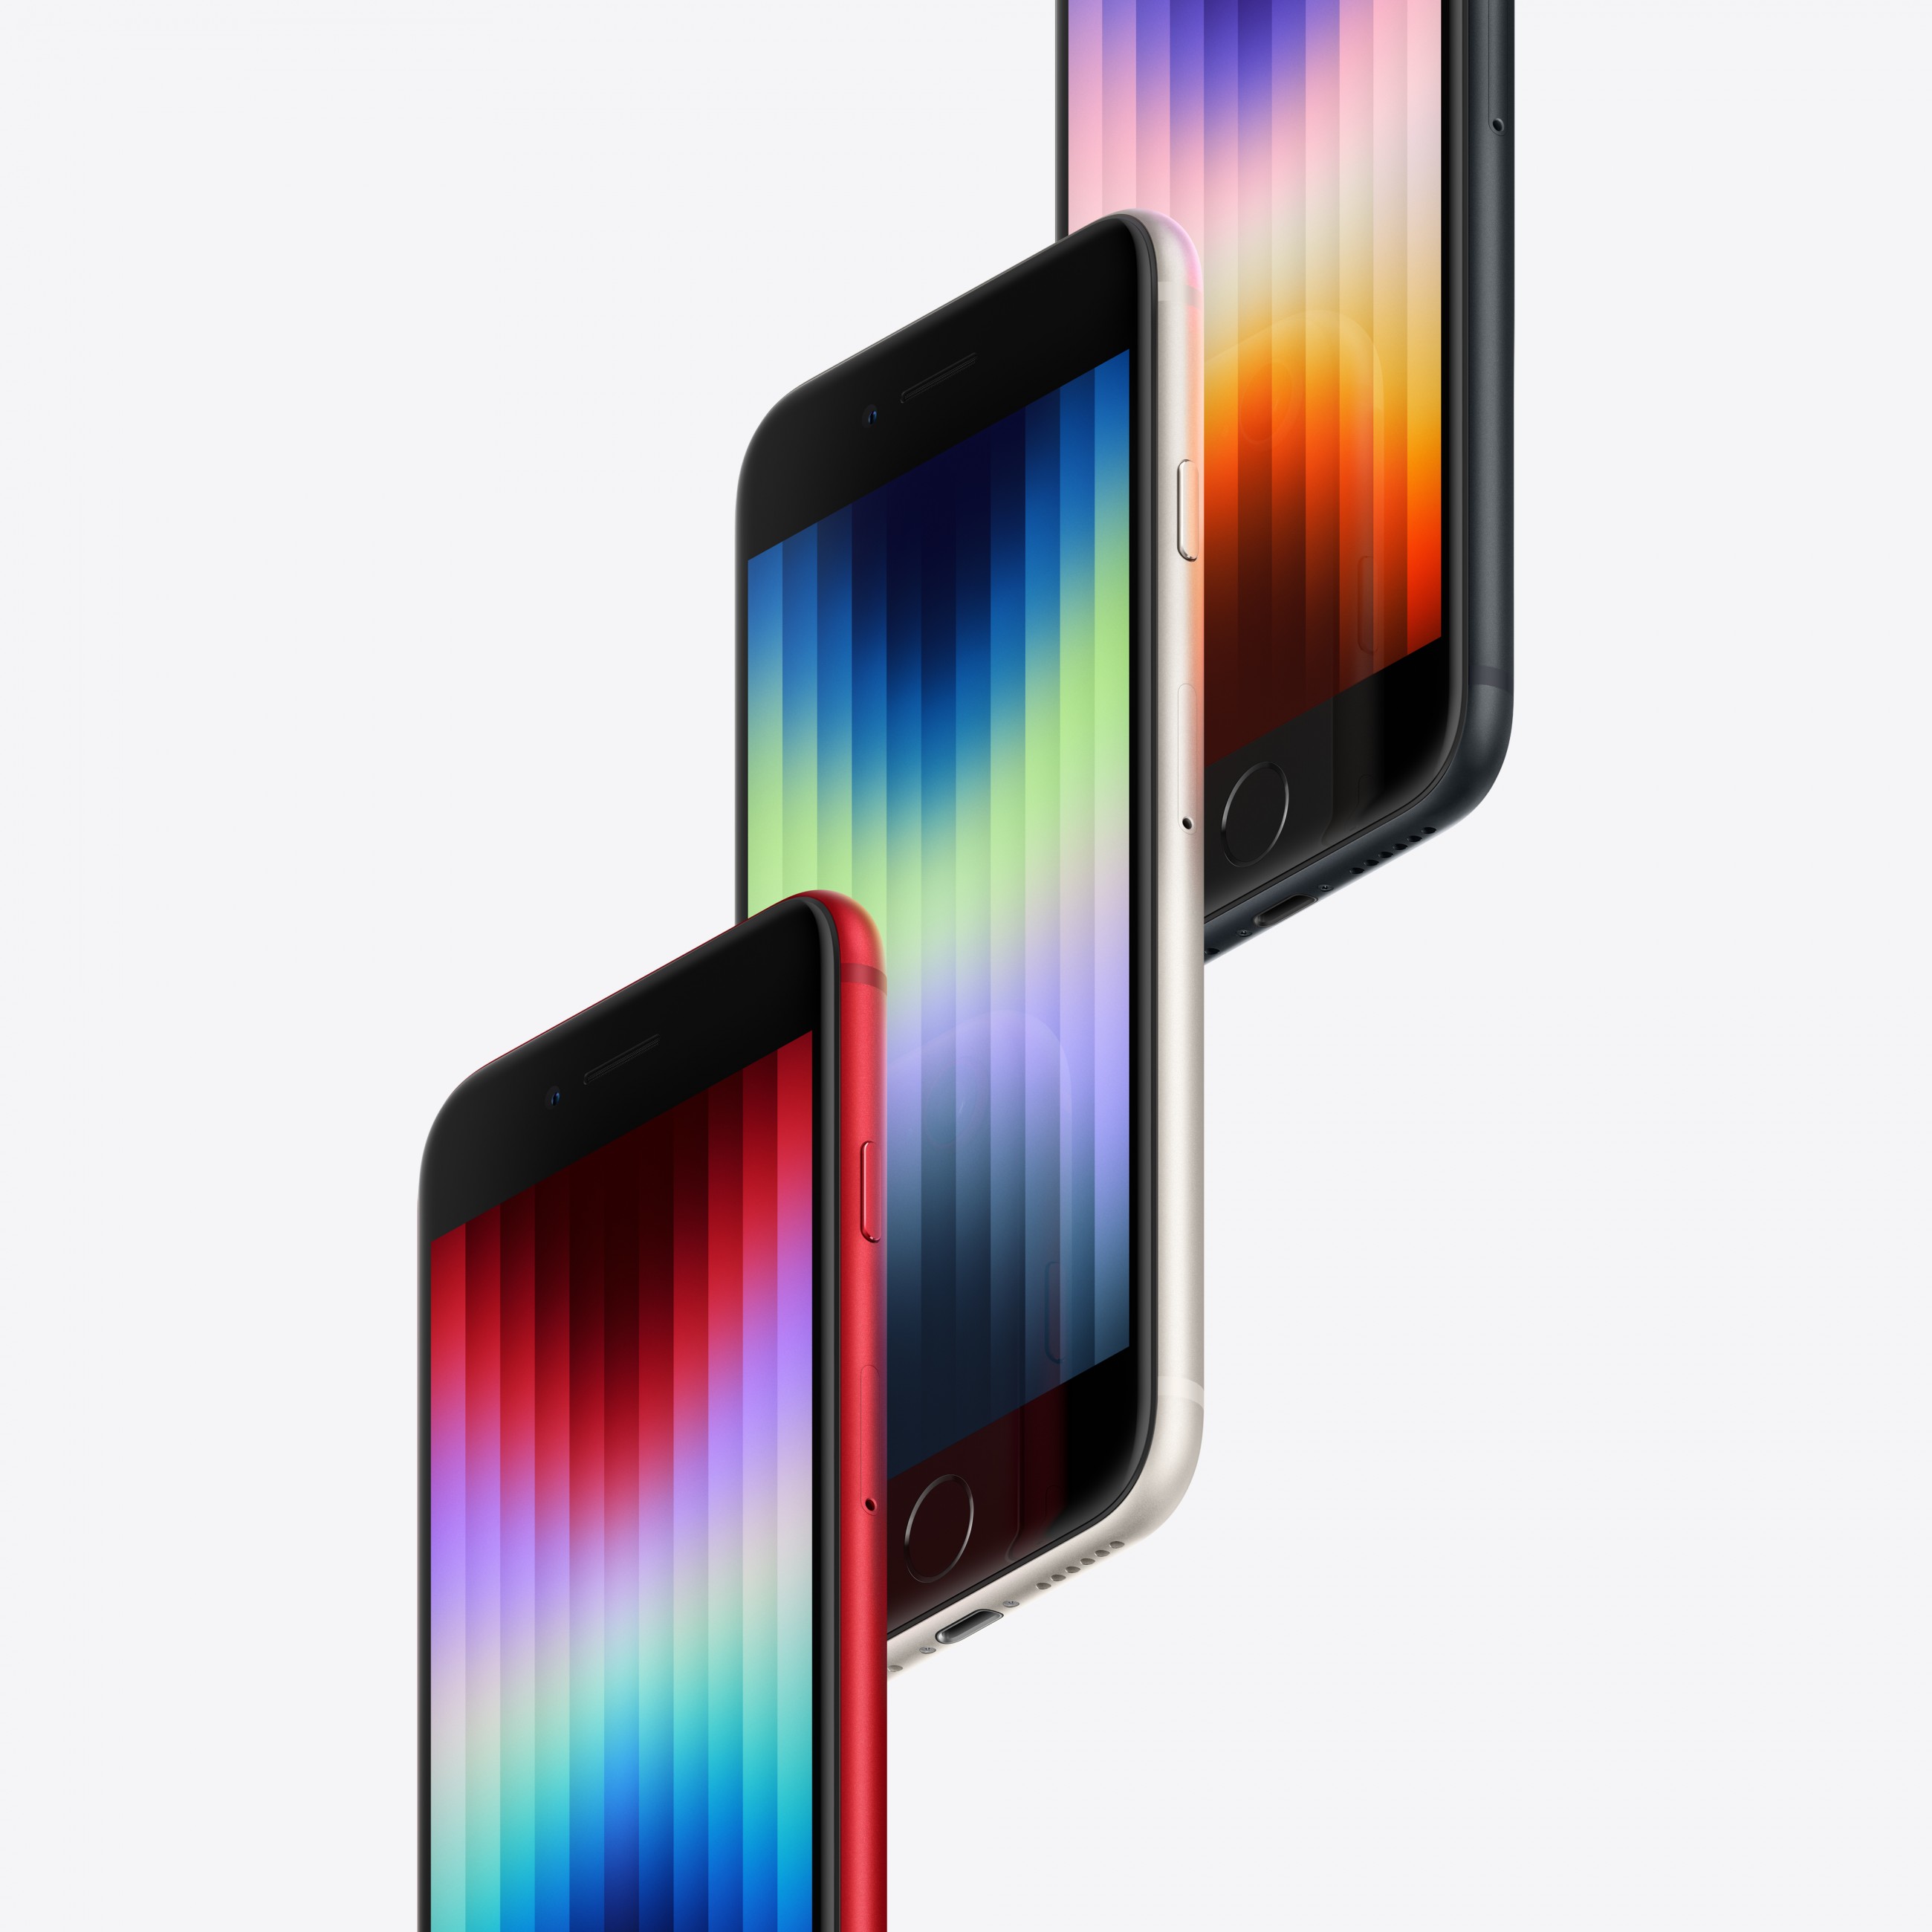 Apple iPhone SE 11,9 cm (4.7 Zoll) Dual-SIM iOS 15 5G 128 GB Schwarz